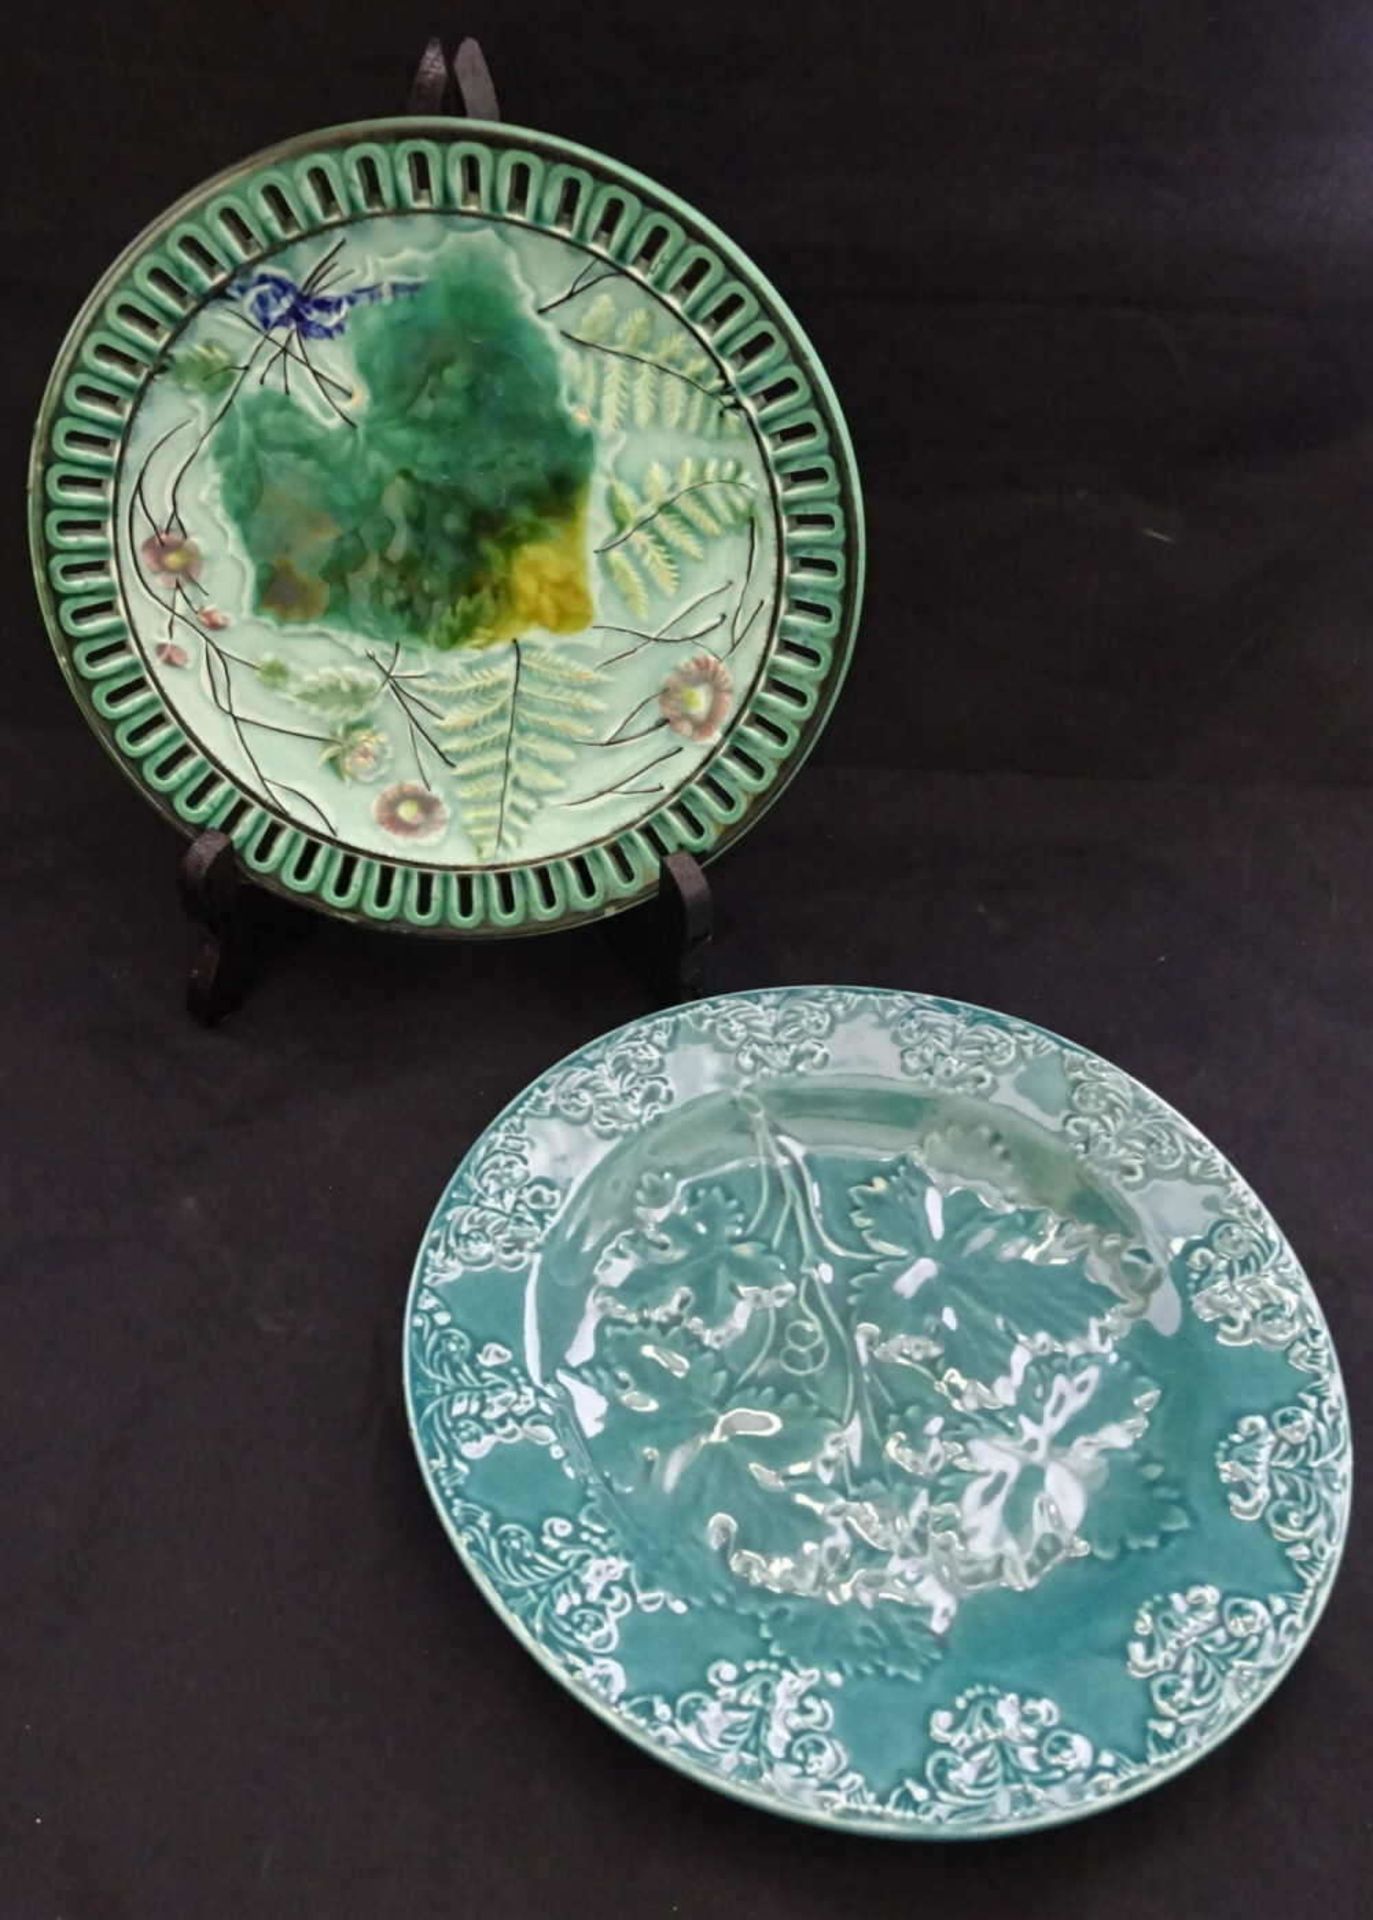 2 Jugendstil Teller Jacoby & Adler, in grün gehalten, 1x bemalt 2 Art Nouveau plates Jacoby & Adler,